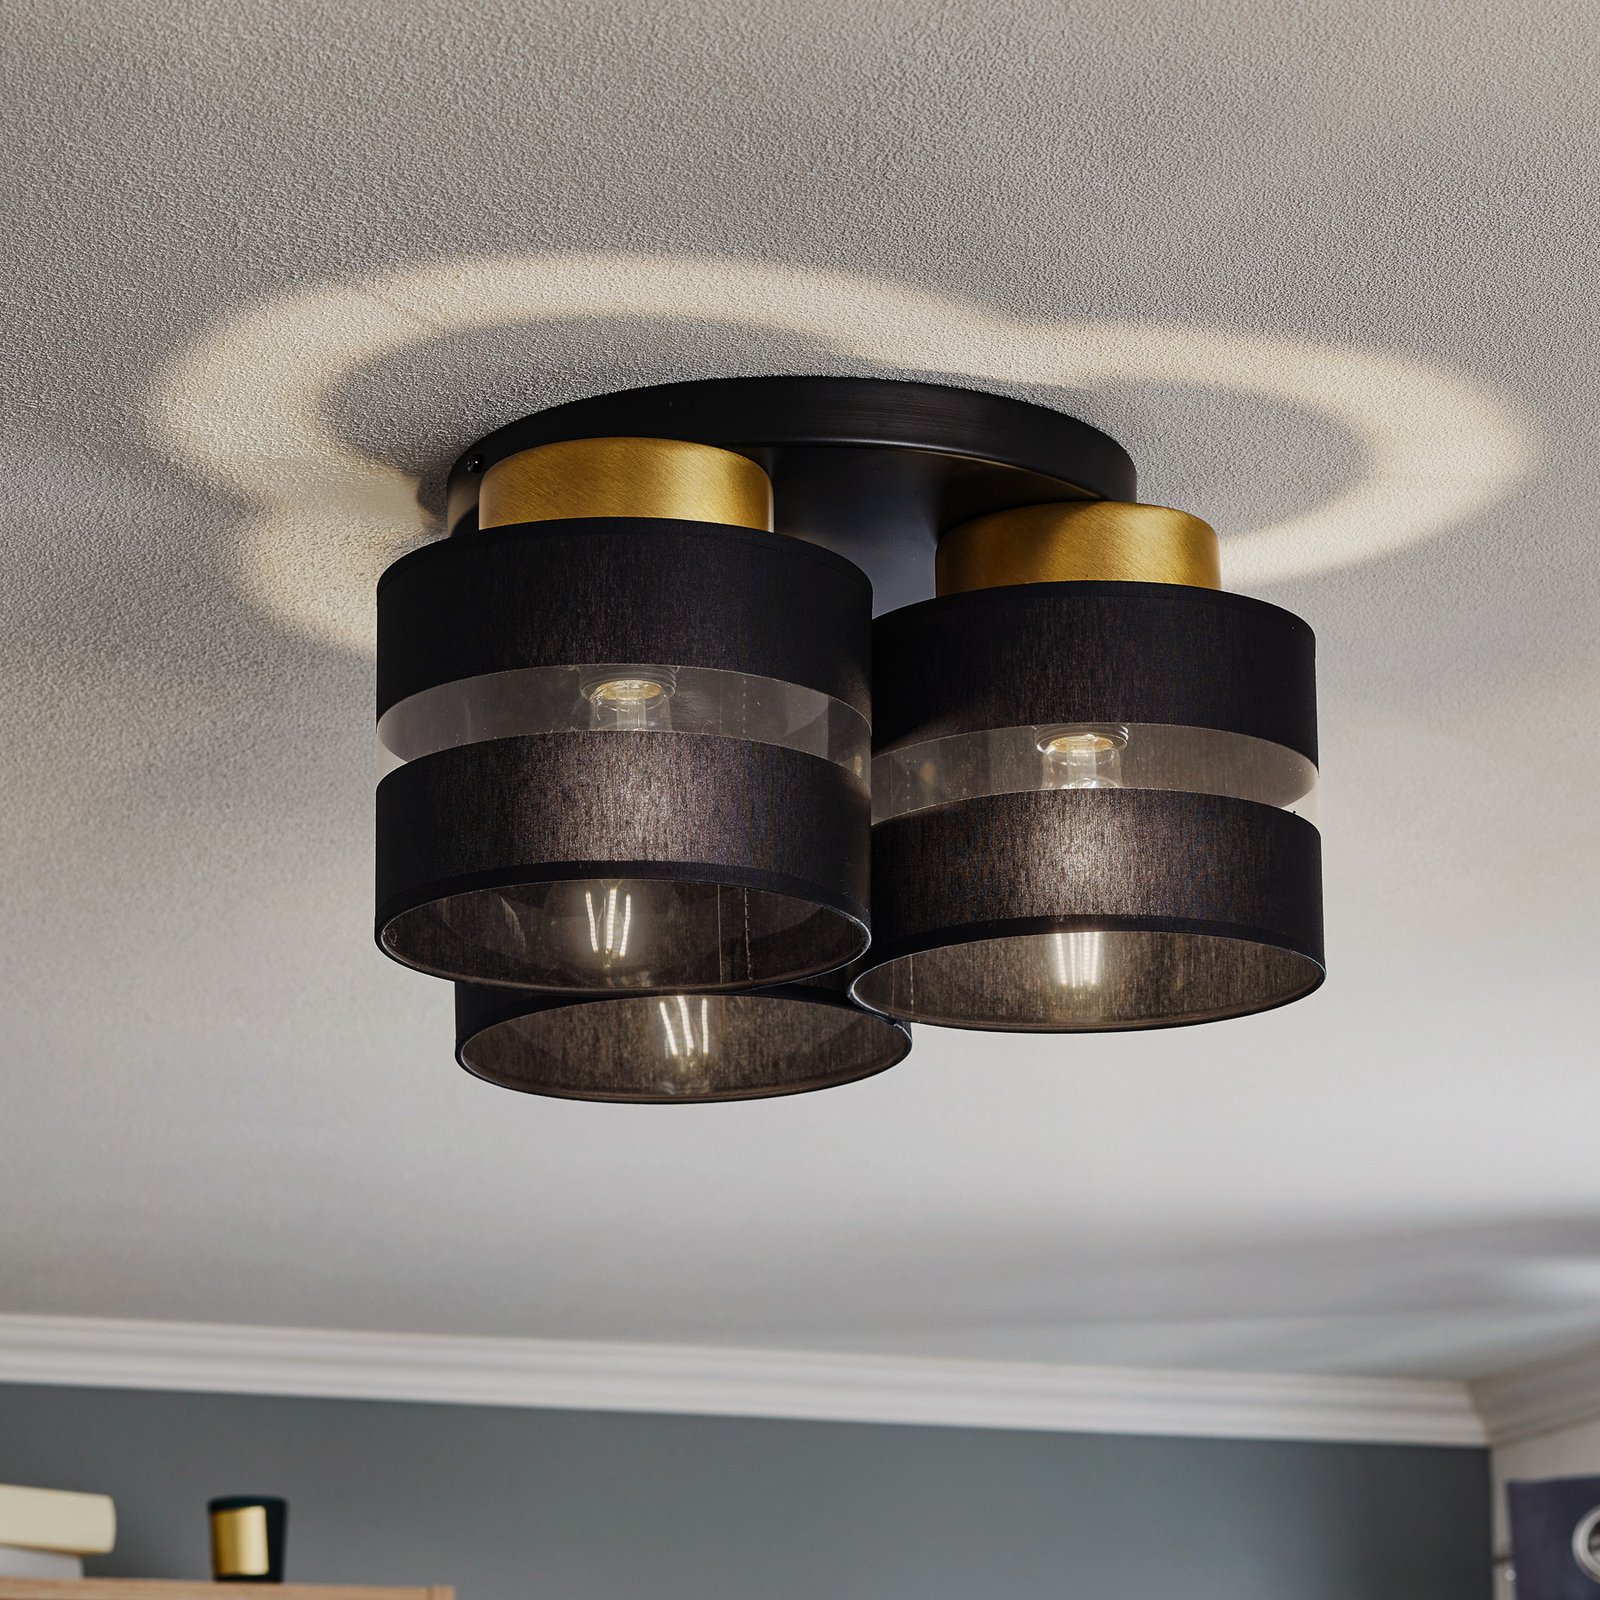 Hara ceiling light in black/gold, 3-bulb